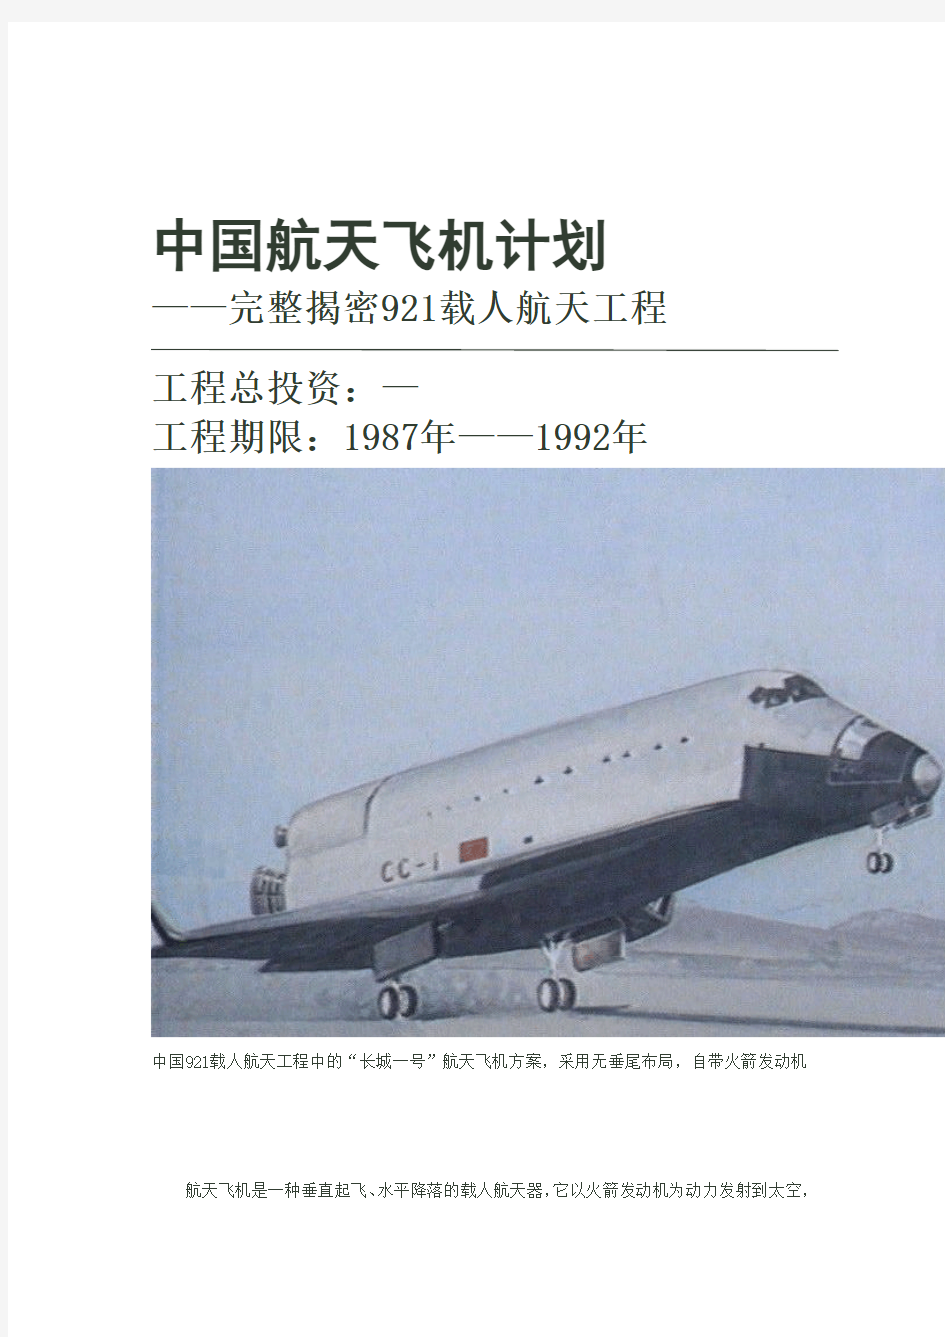 中国航天飞机计划——完整揭密921载人航天工程(图)来自网络